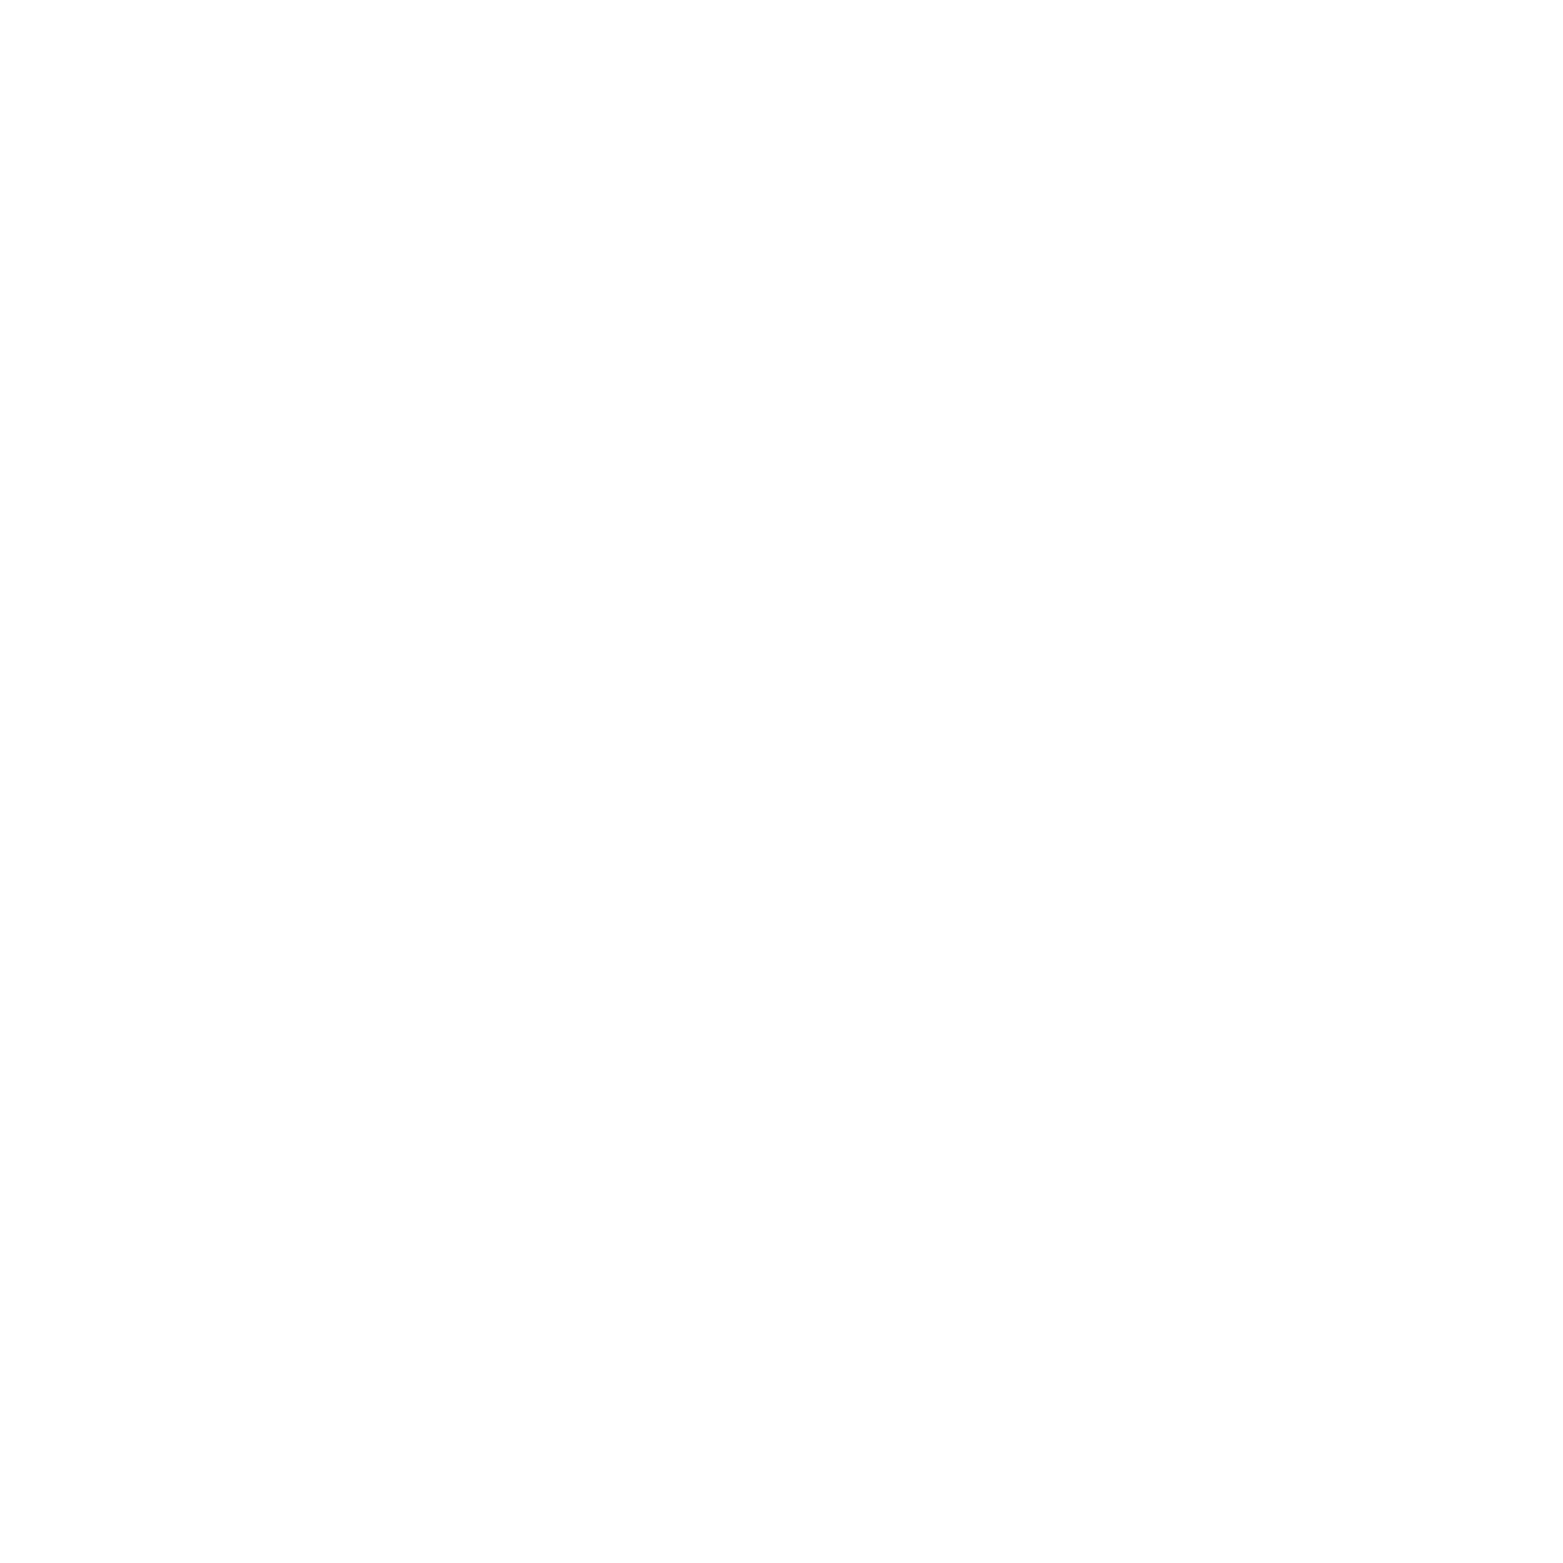 Veru logo for dark backgrounds (transparent PNG)